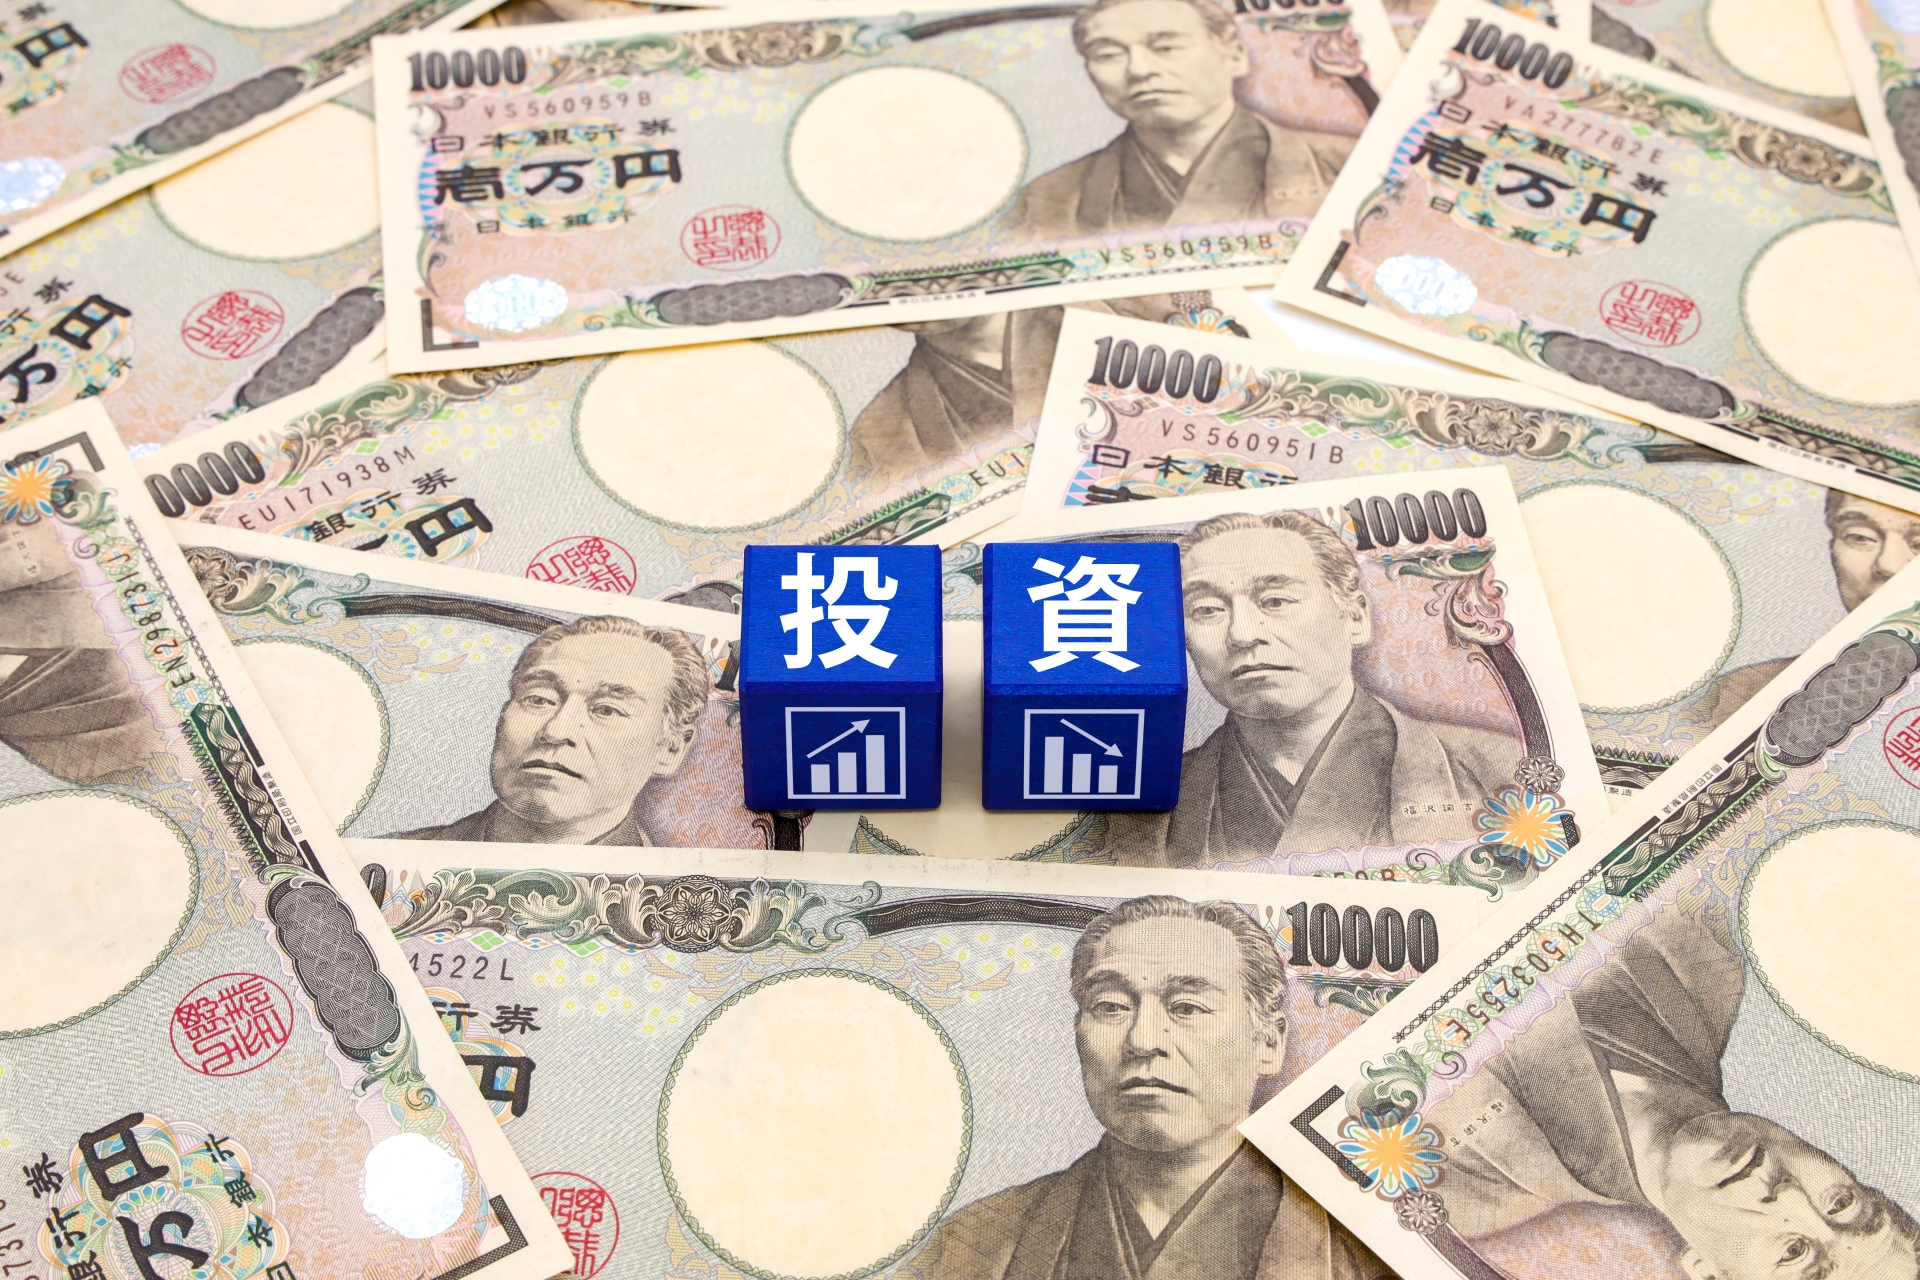 1万円札と投資と書かれたブロック